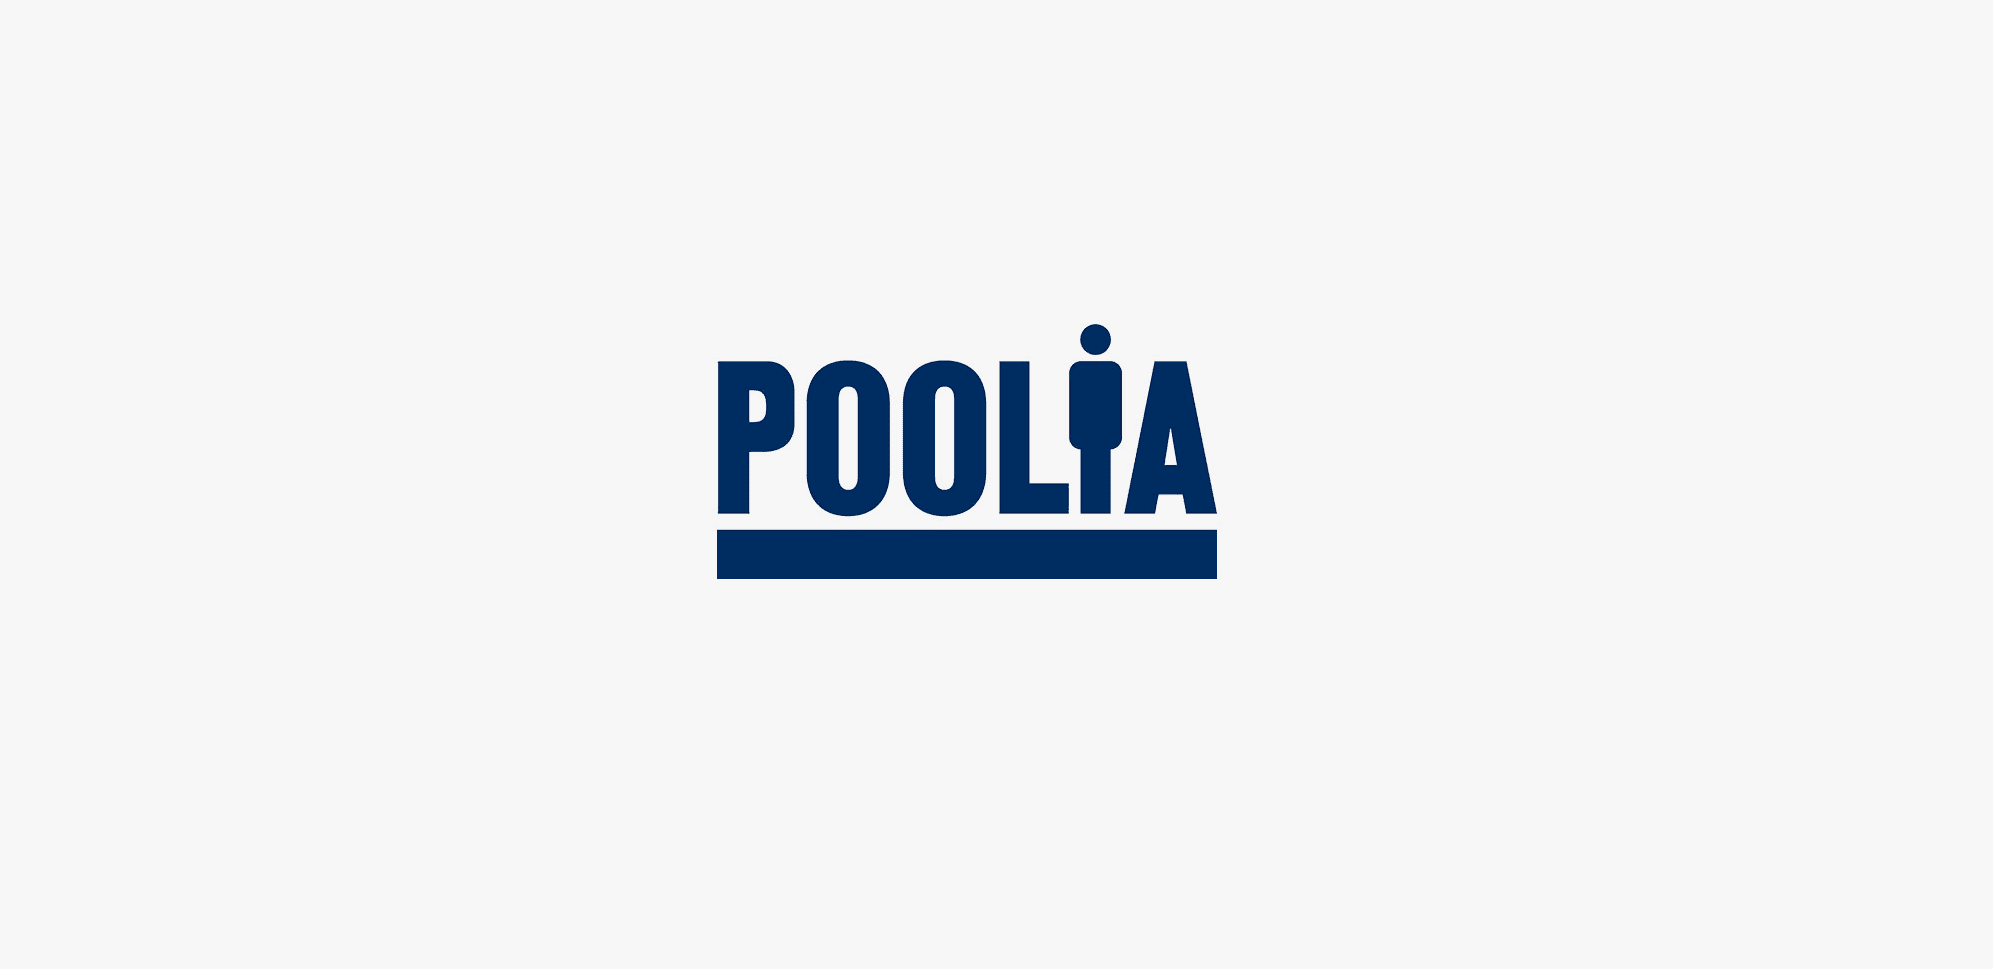 Pooliakoncernens noterade moderbolag Poolia AB avser nu att byta namn till PION Group AB